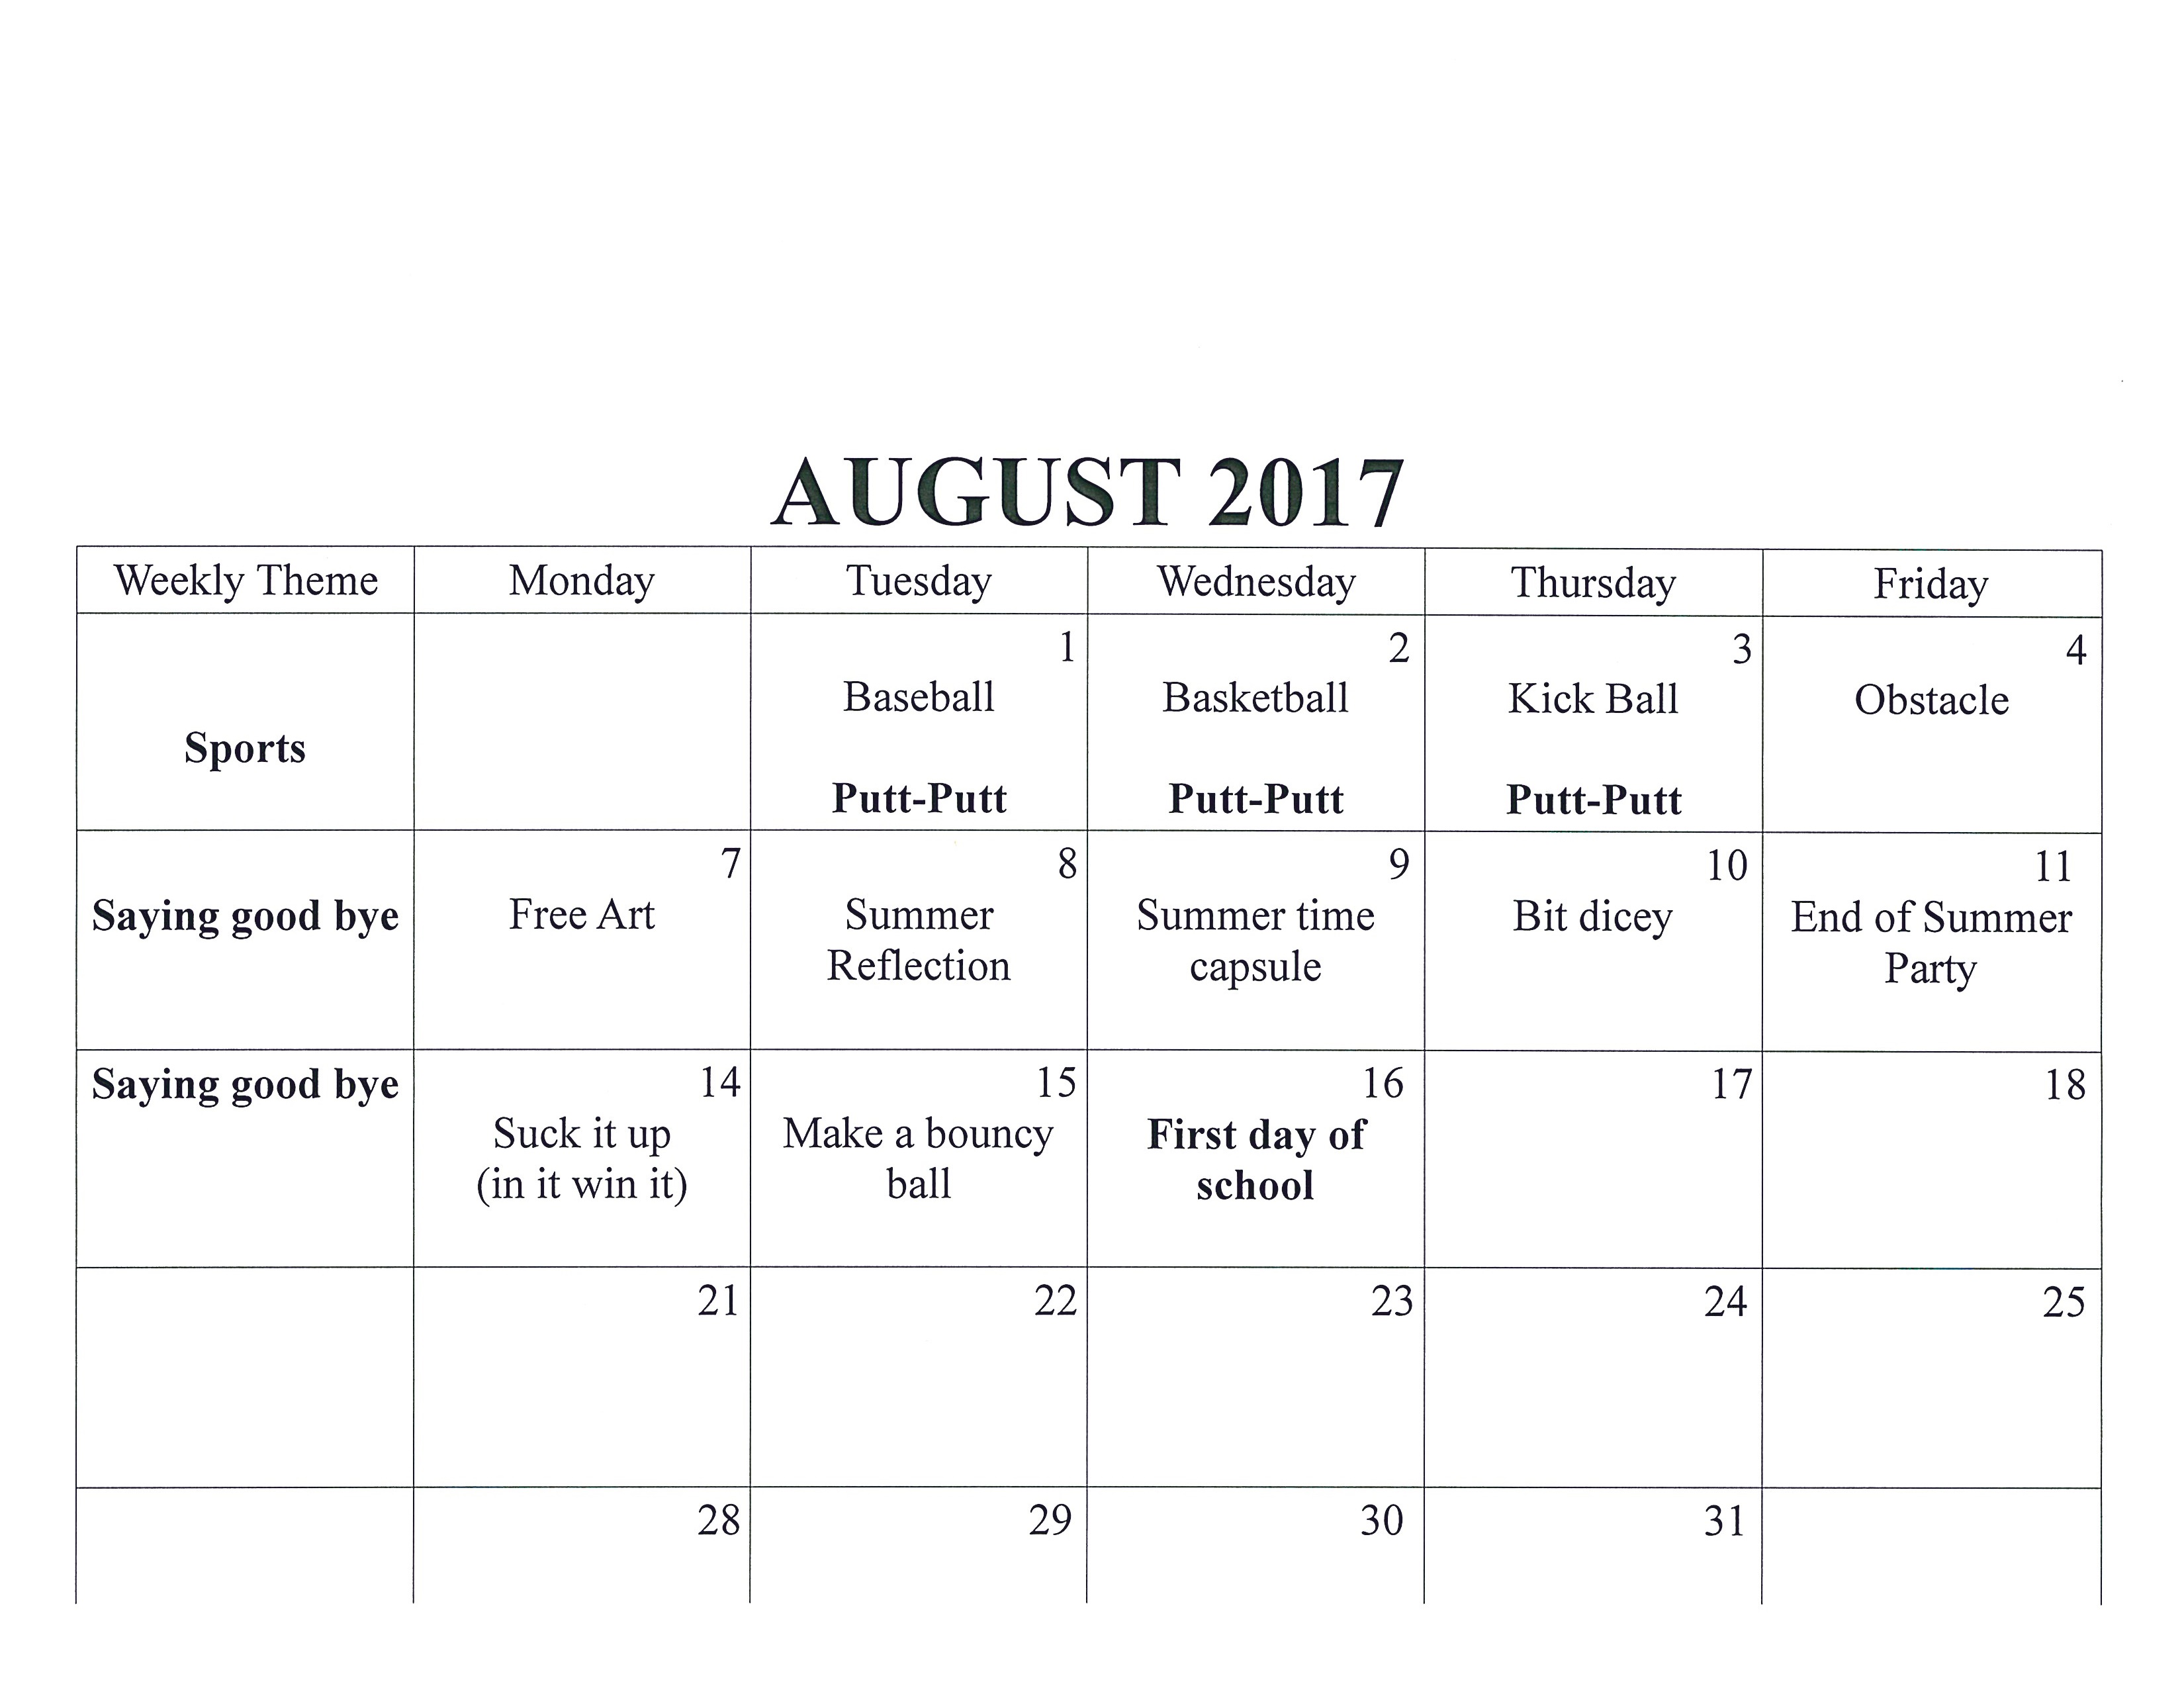 August schedule